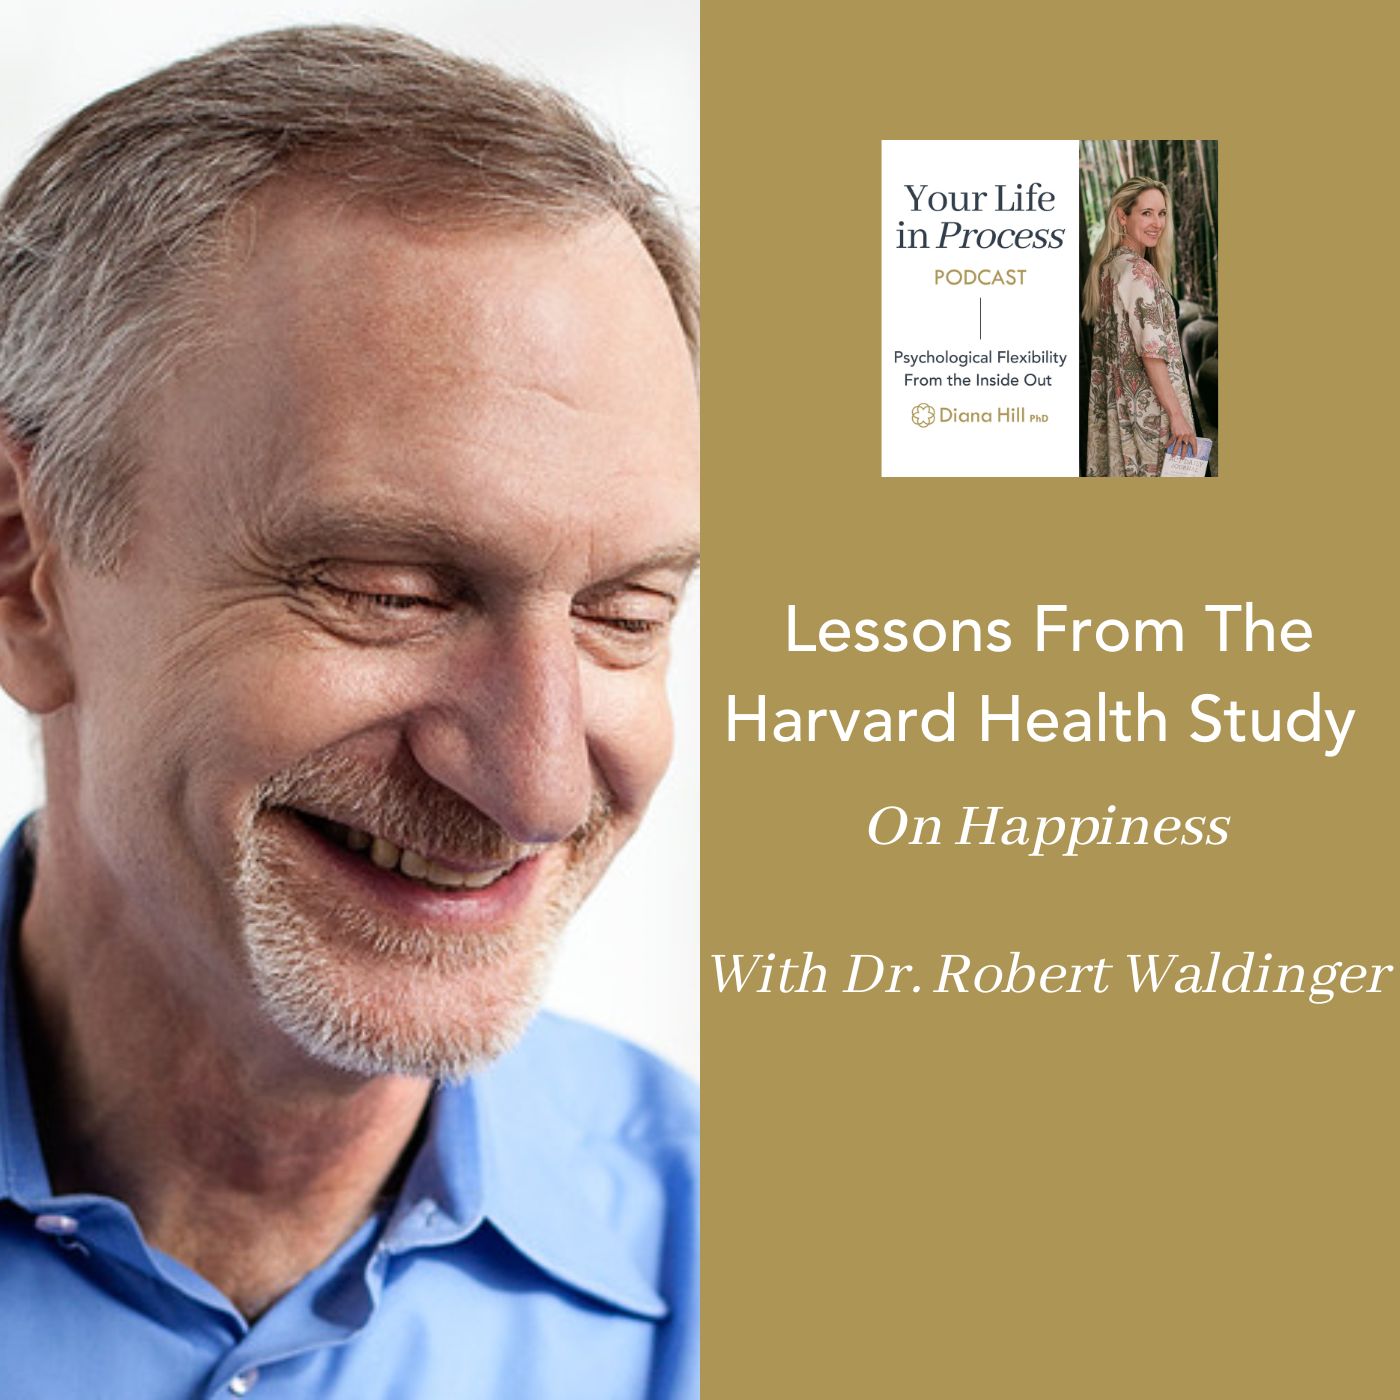 Robert Waldinger interview: How to be happy